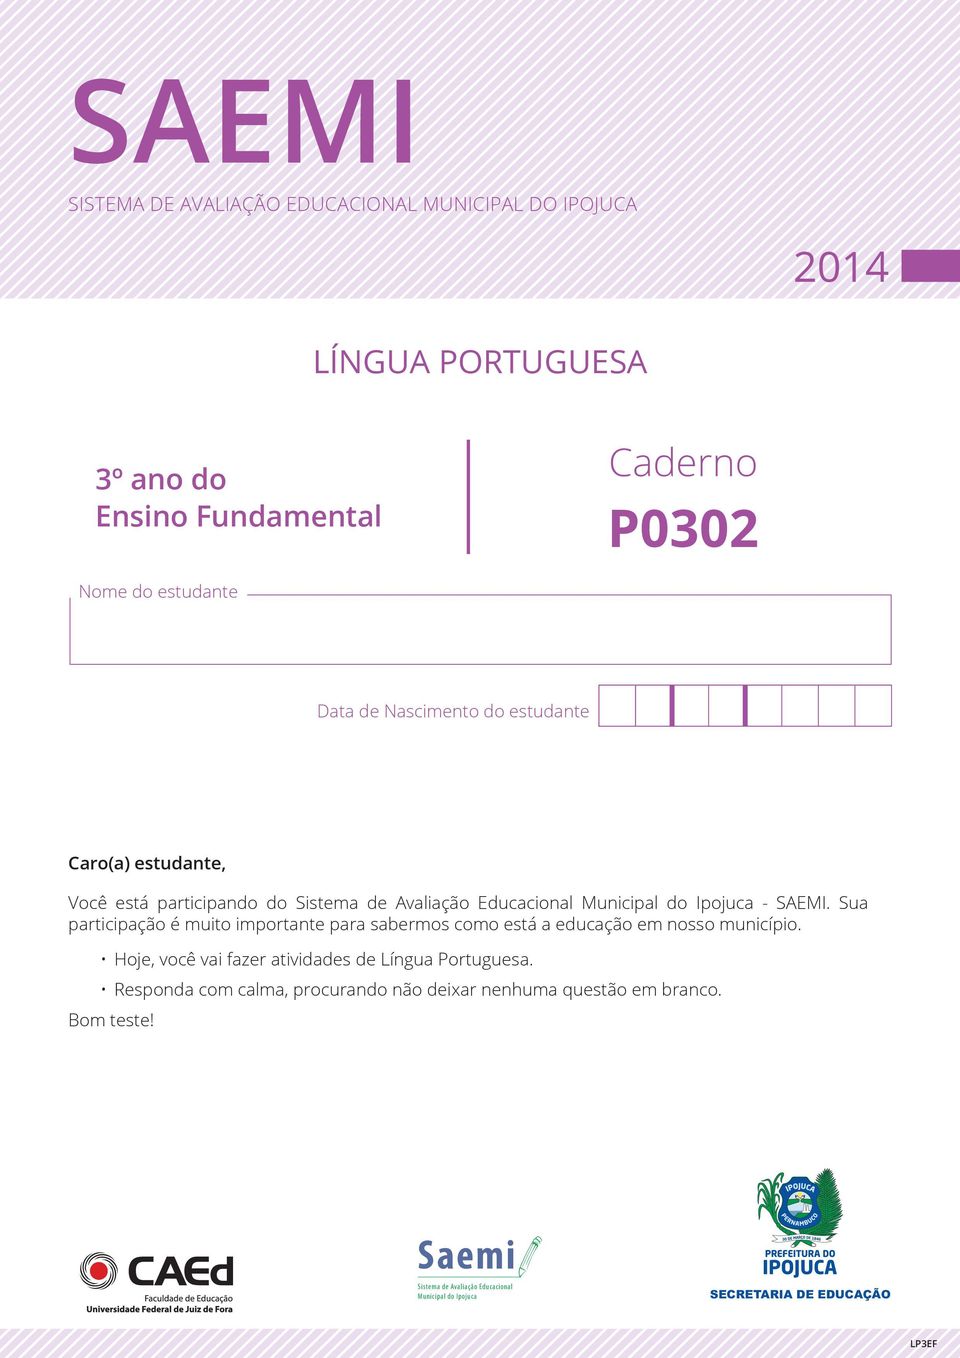 Sua participação é muito importante para sabermos como está a educação em nosso município. Hoje, você vai fazer atividades de Língua Portuguesa.